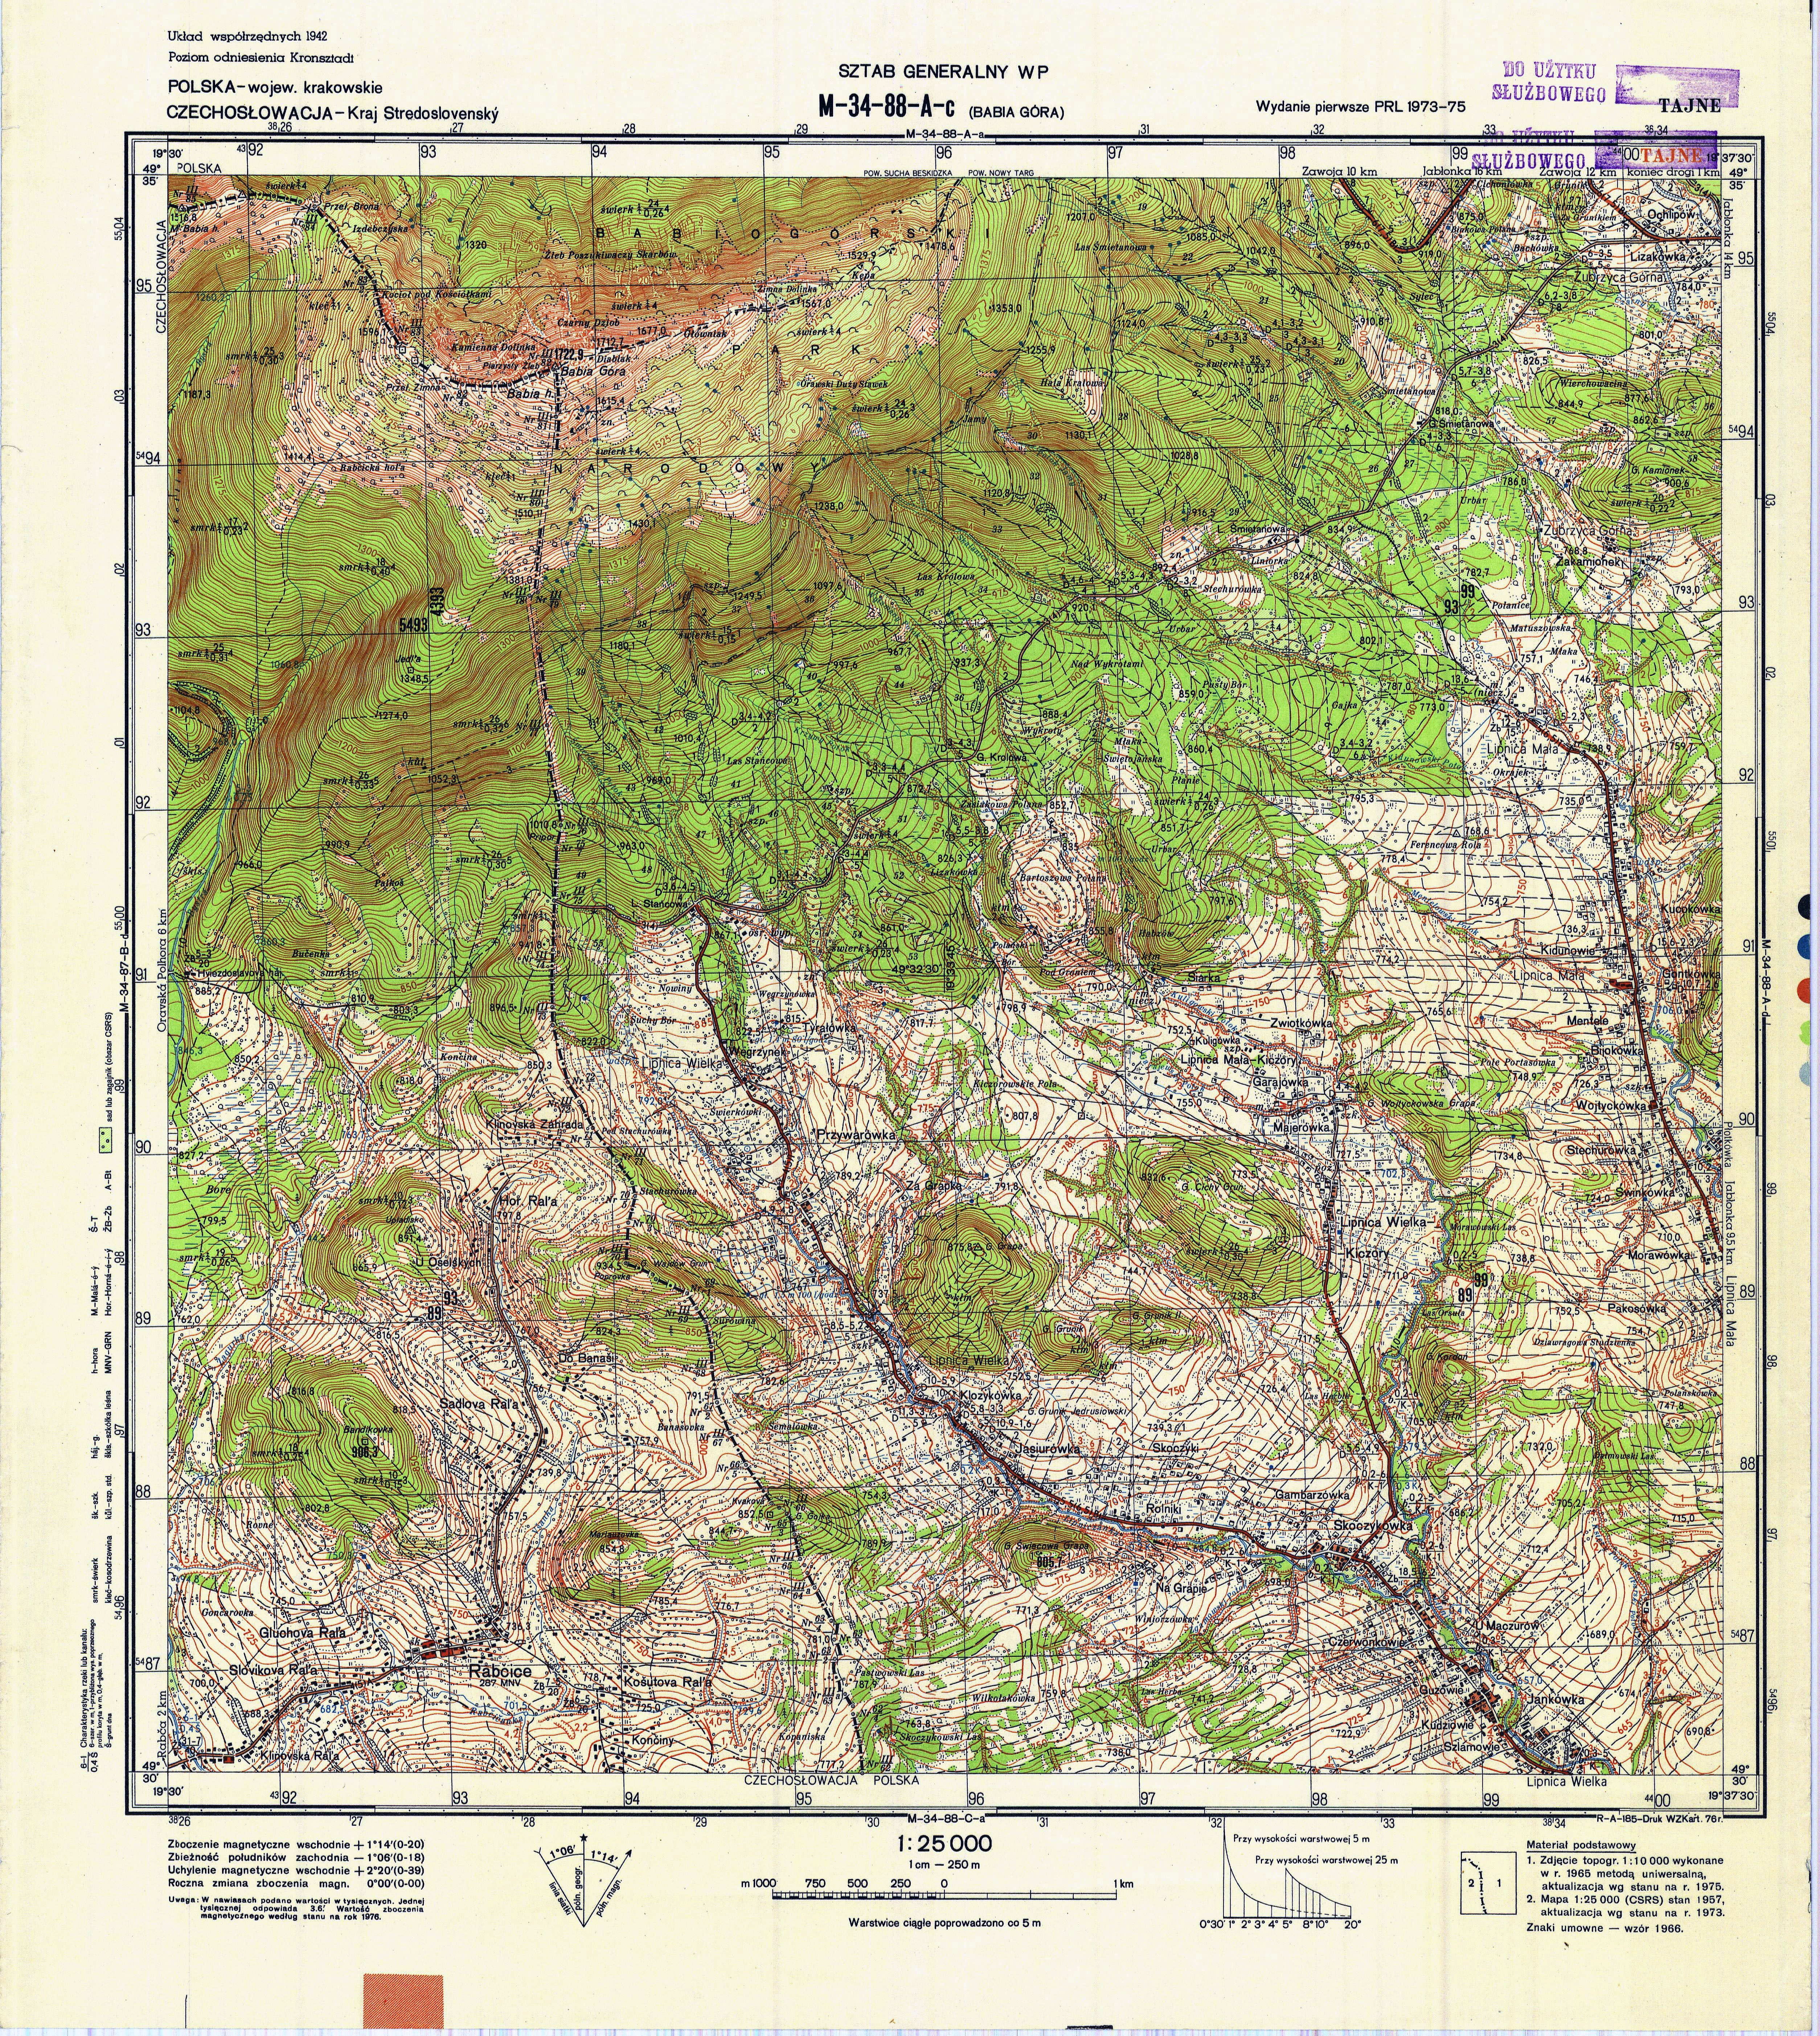 Mapy topograficzne LWP 1_25 000 - M-34-88-A-c_BABIA_GORA_1976.jpg